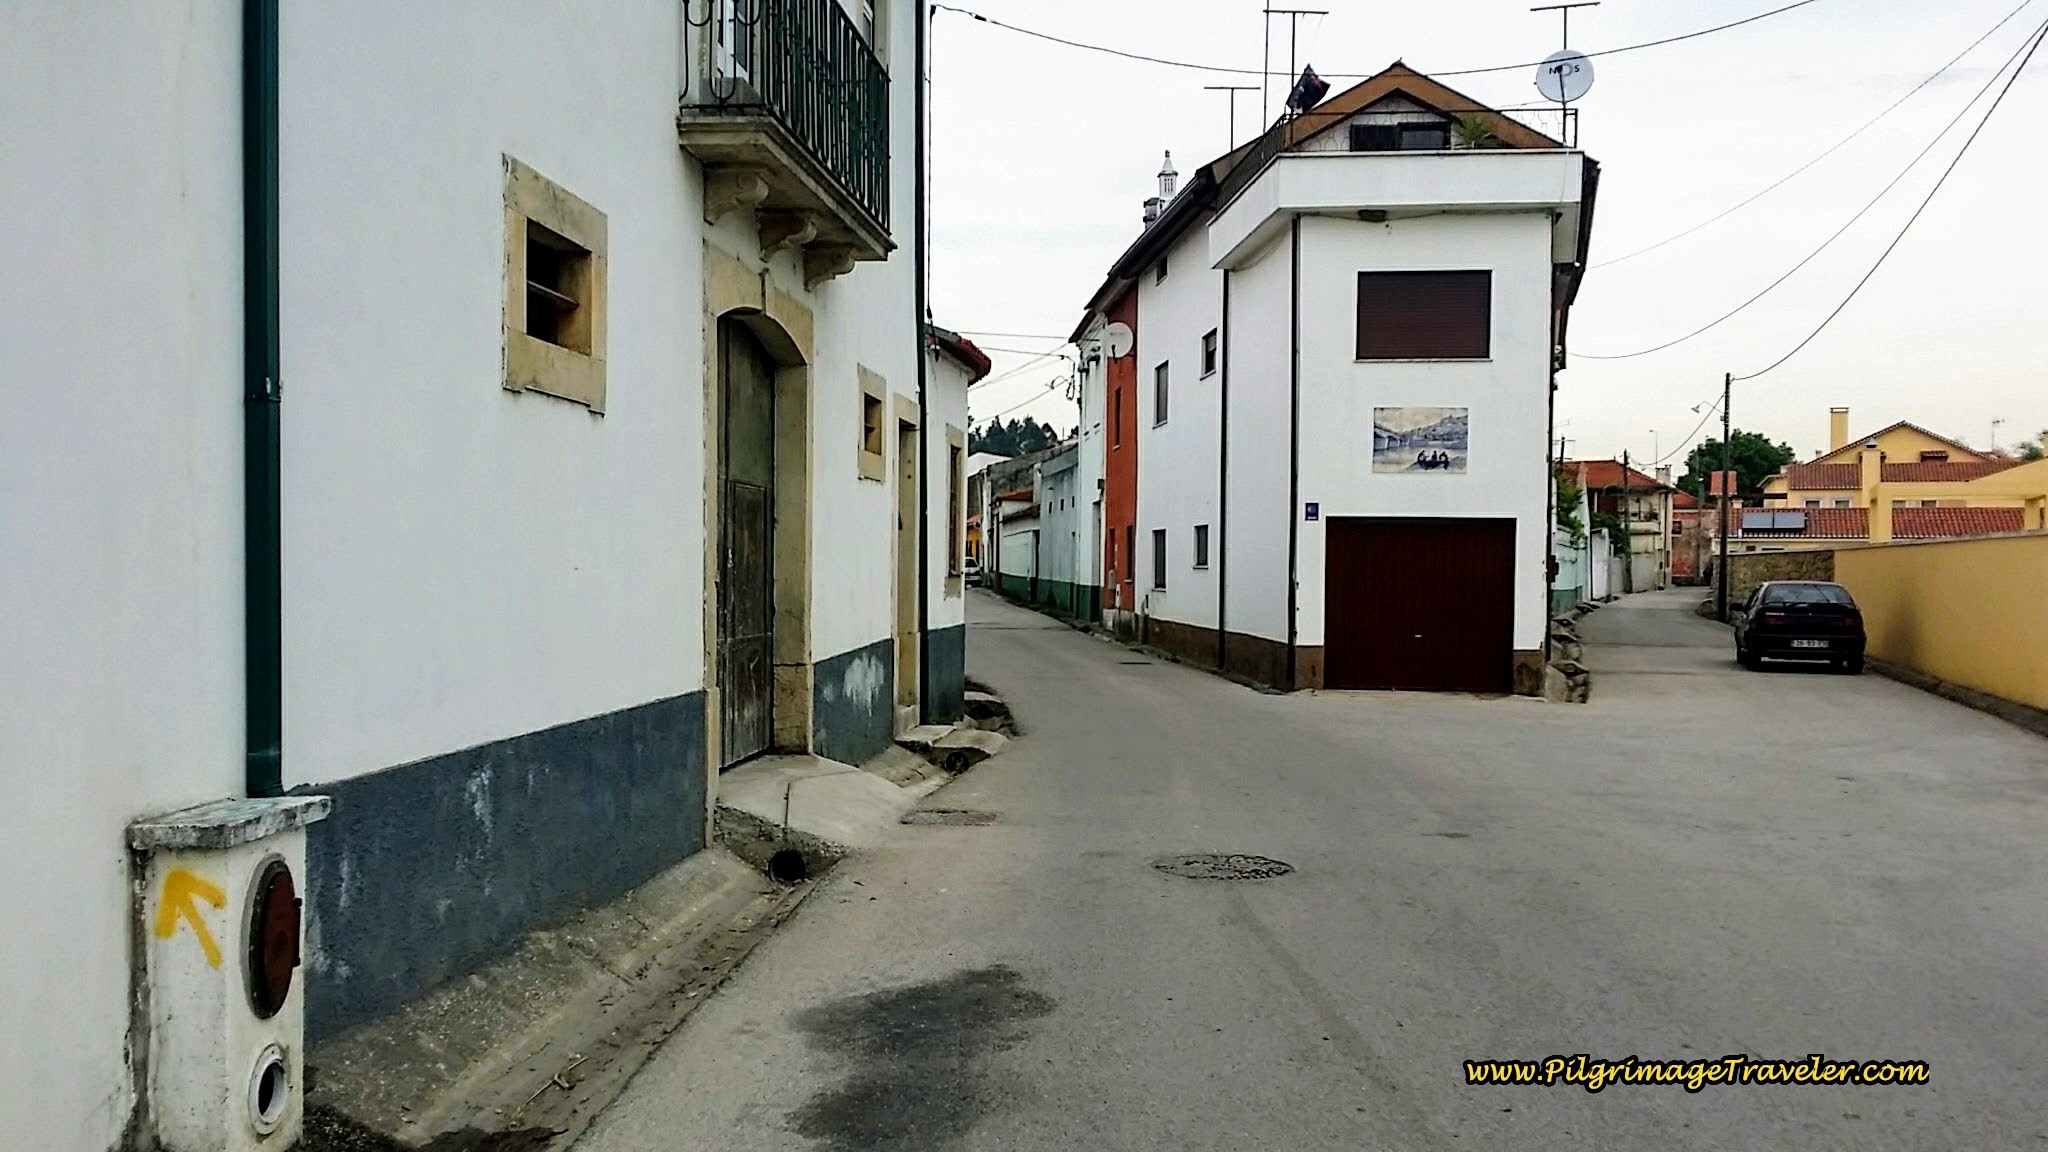 Turn Left Here onto the Rua Nossa Senhora da Esperança in Fornos, Portugal